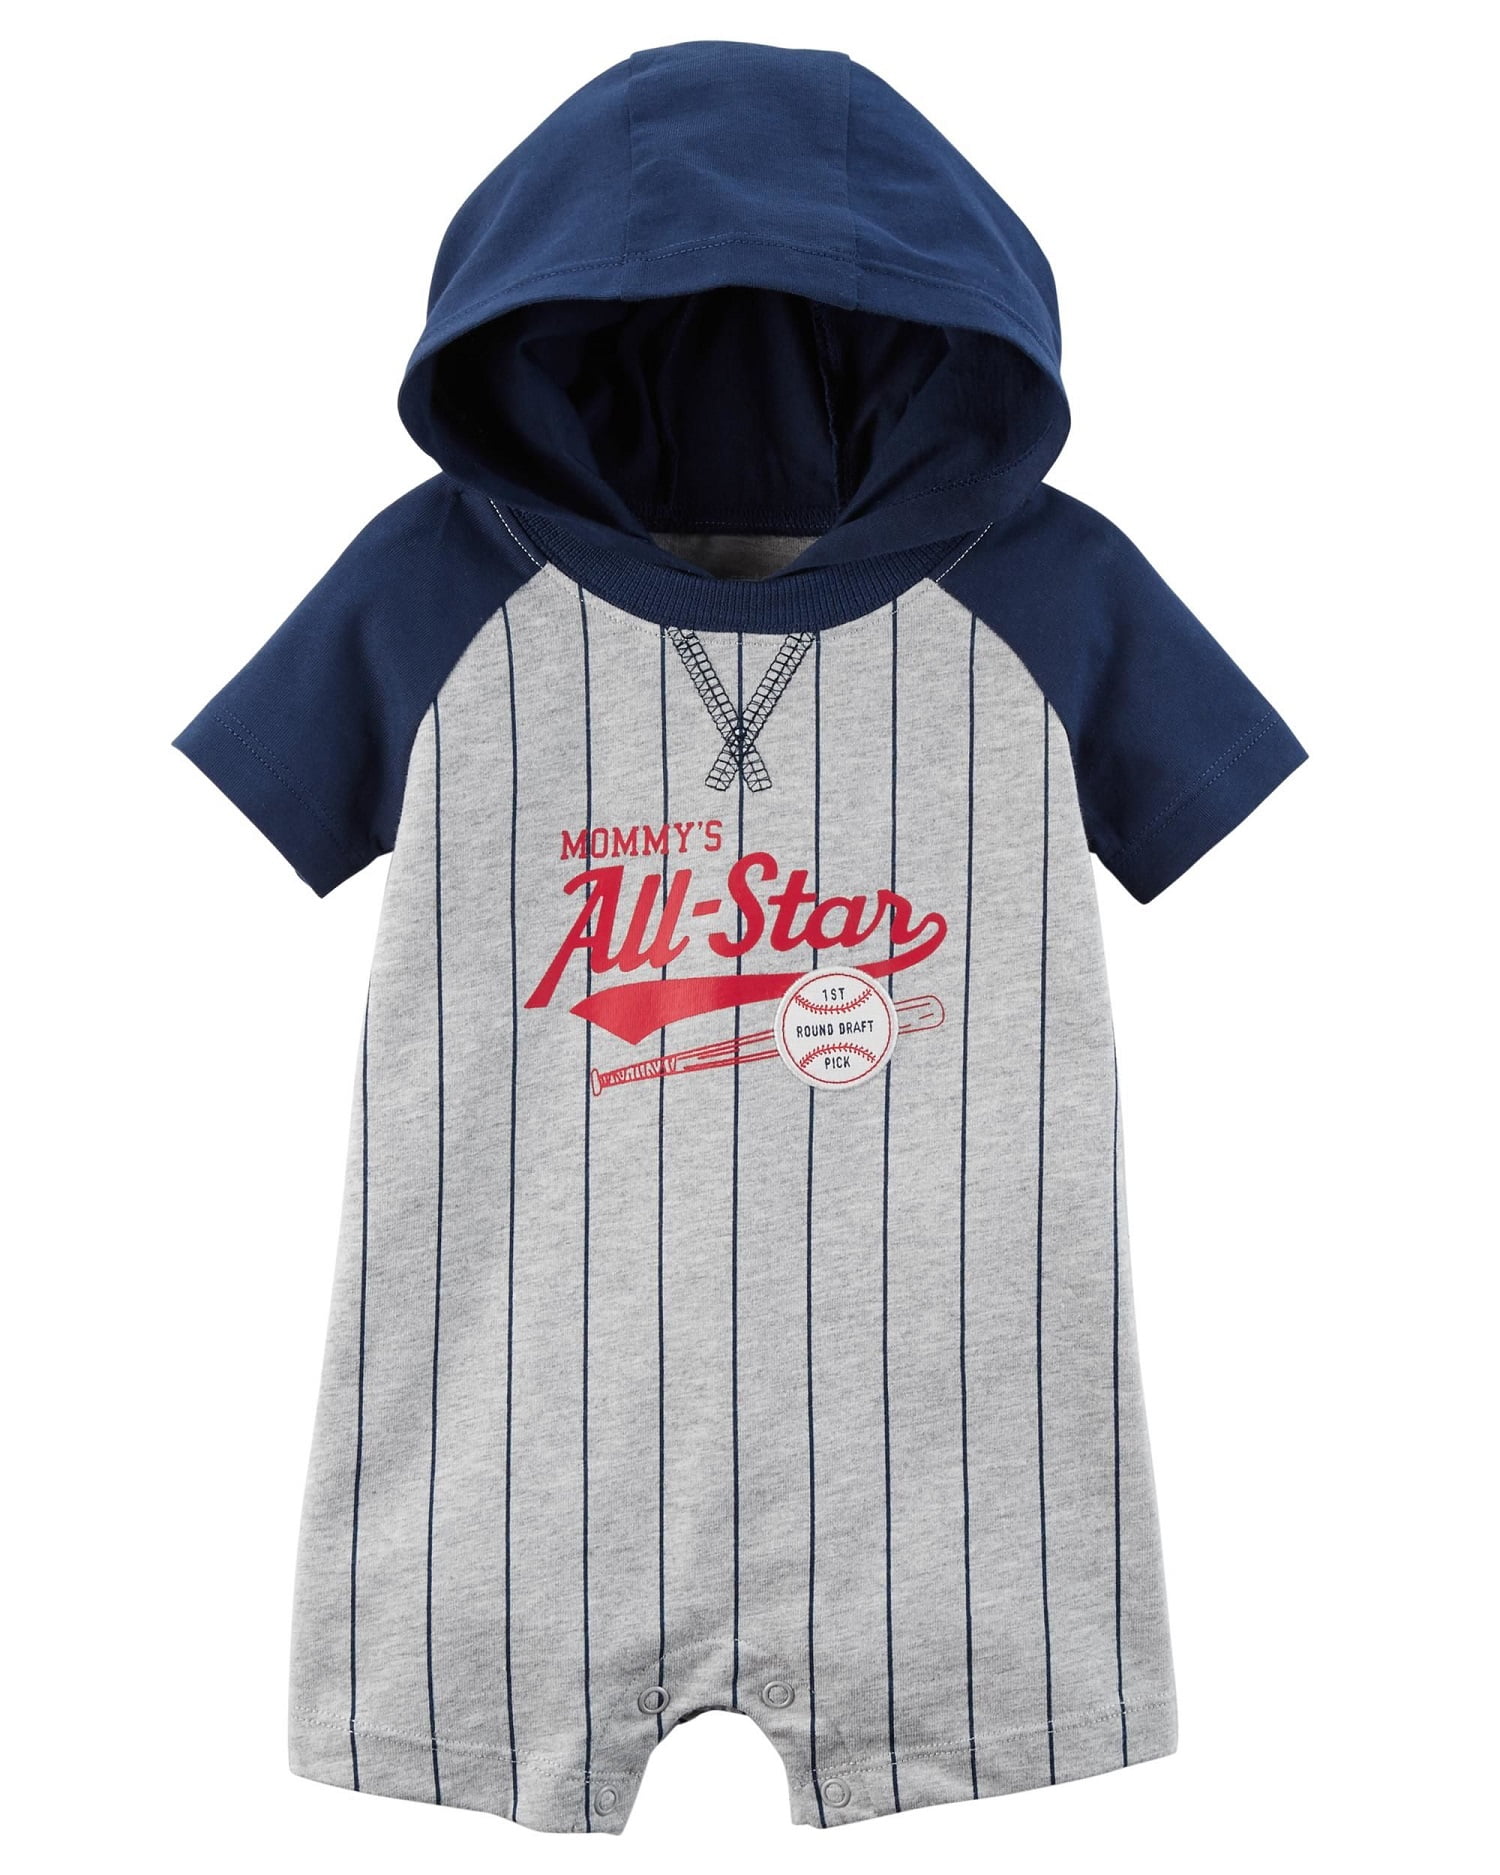 baby boy baseball clothes